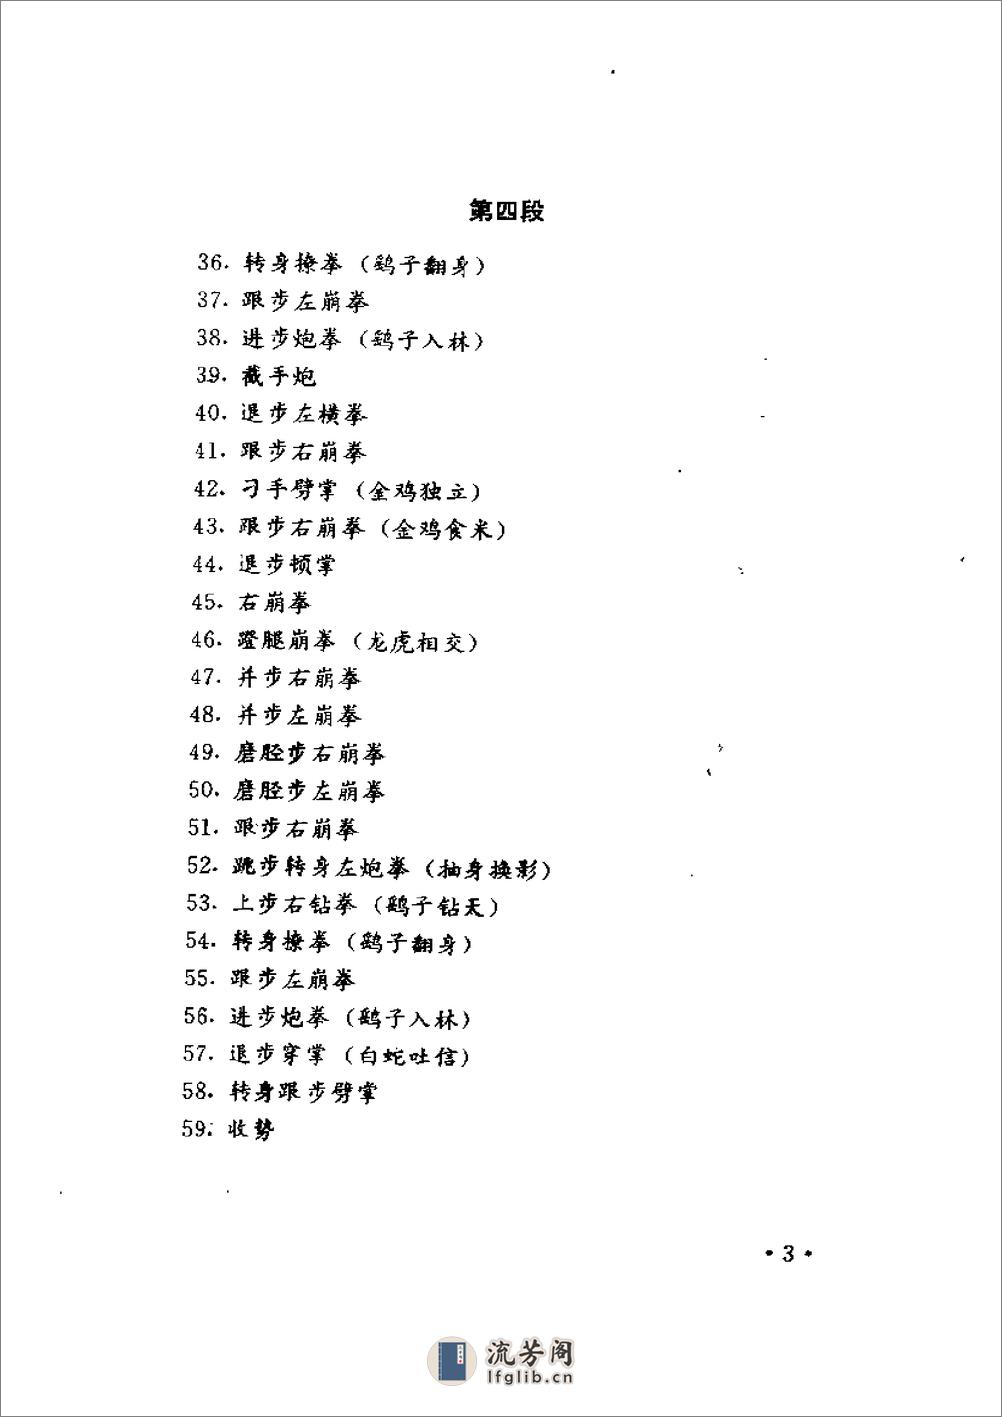 《形意拳》中国武术系列规定套路编写组 - 第9页预览图